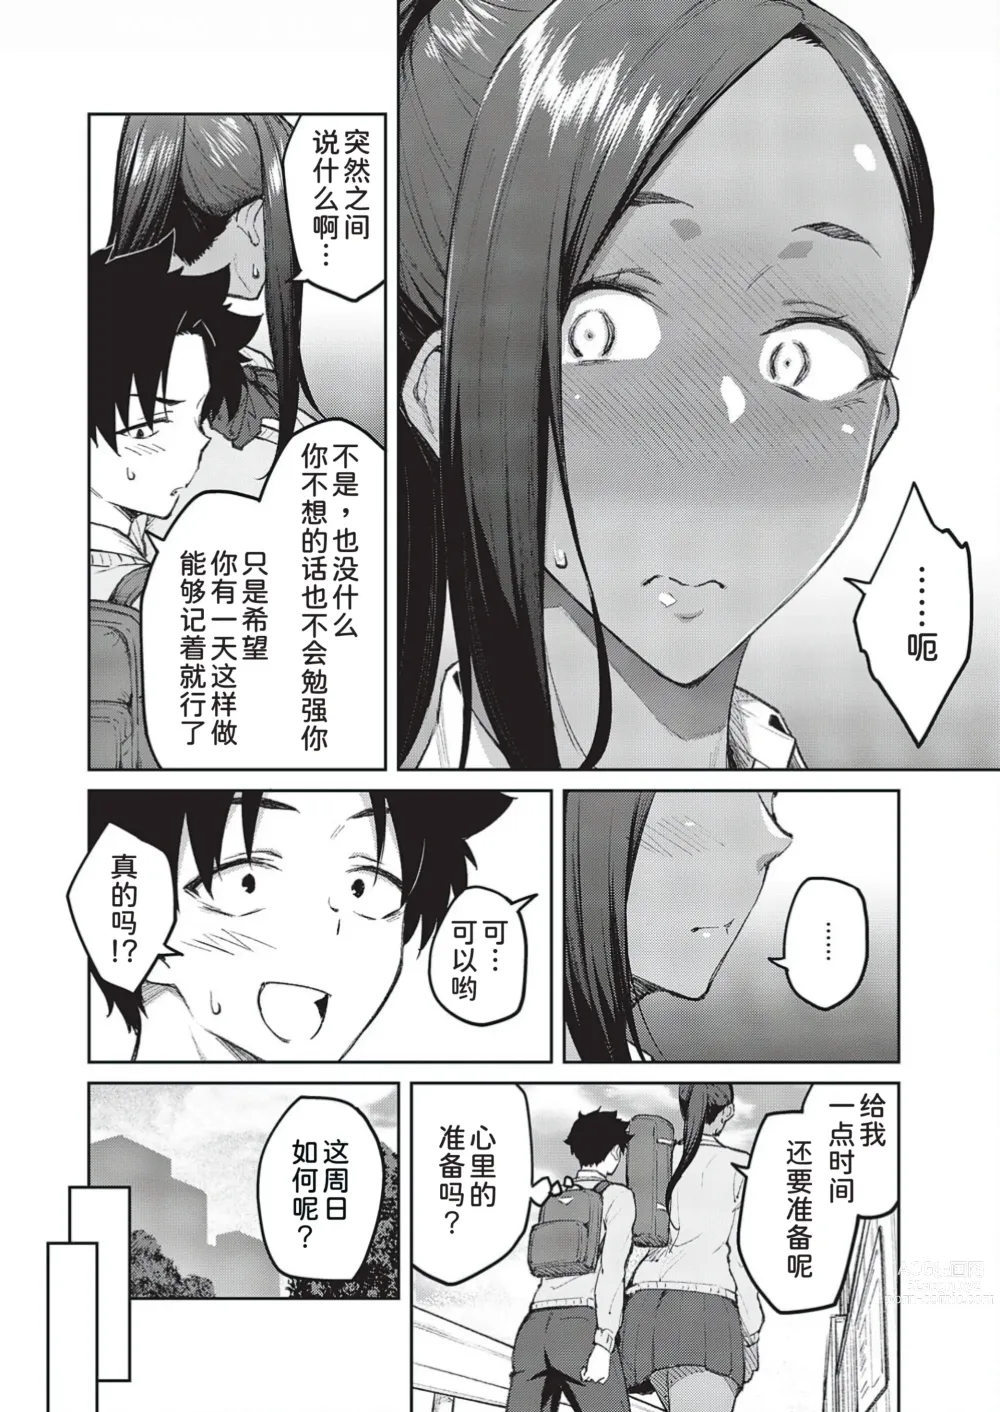 Page 7 of manga Tachiaoi 3